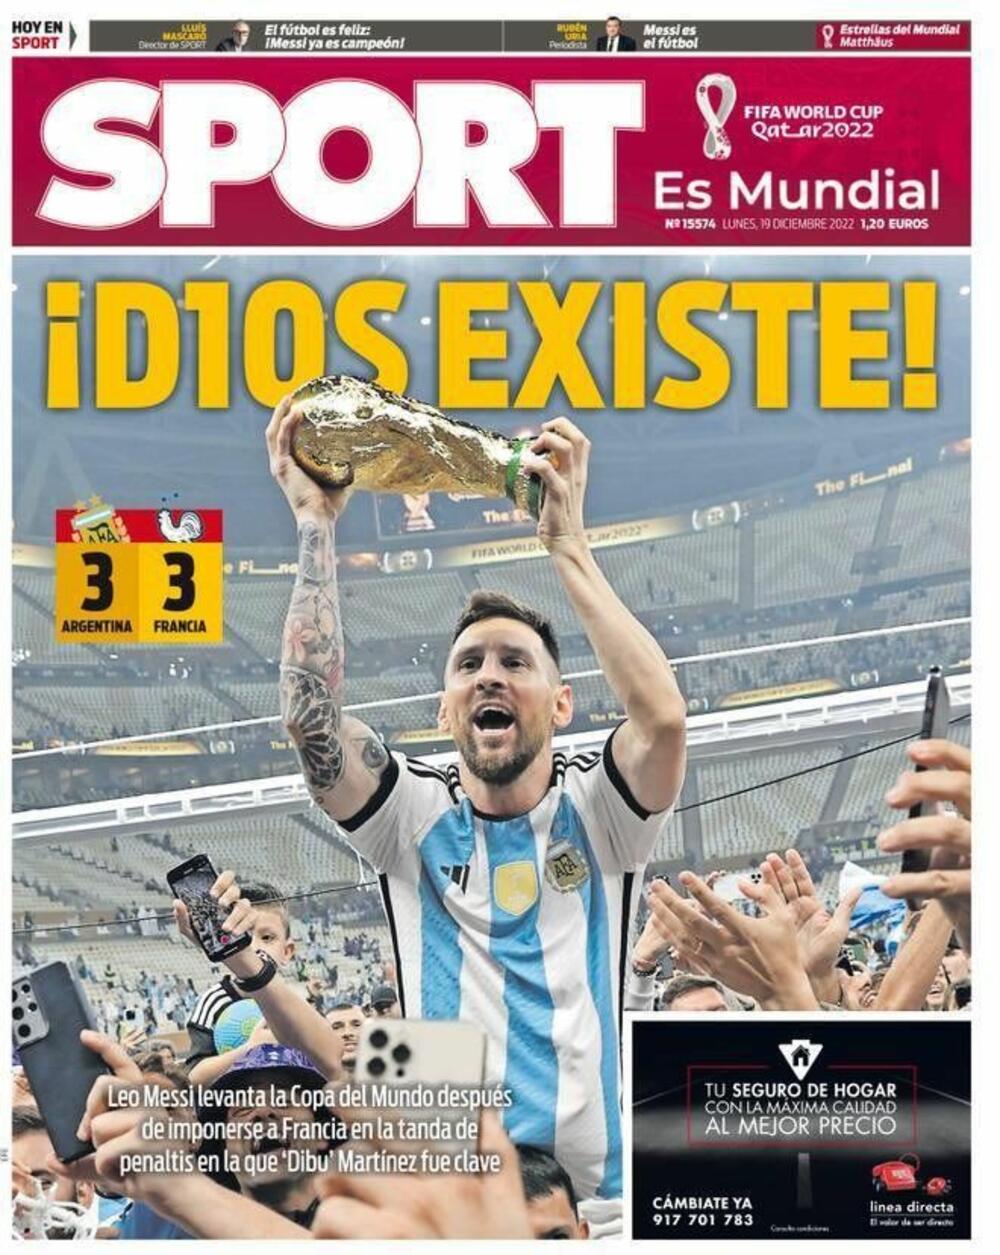 <p>Možda je najkreativniji bio katalonski „Sport”, koji je napisao „Bog postoji”, ali je na španskom napisao bog (dios) sa Mesijevom desetkom - D10S</p>